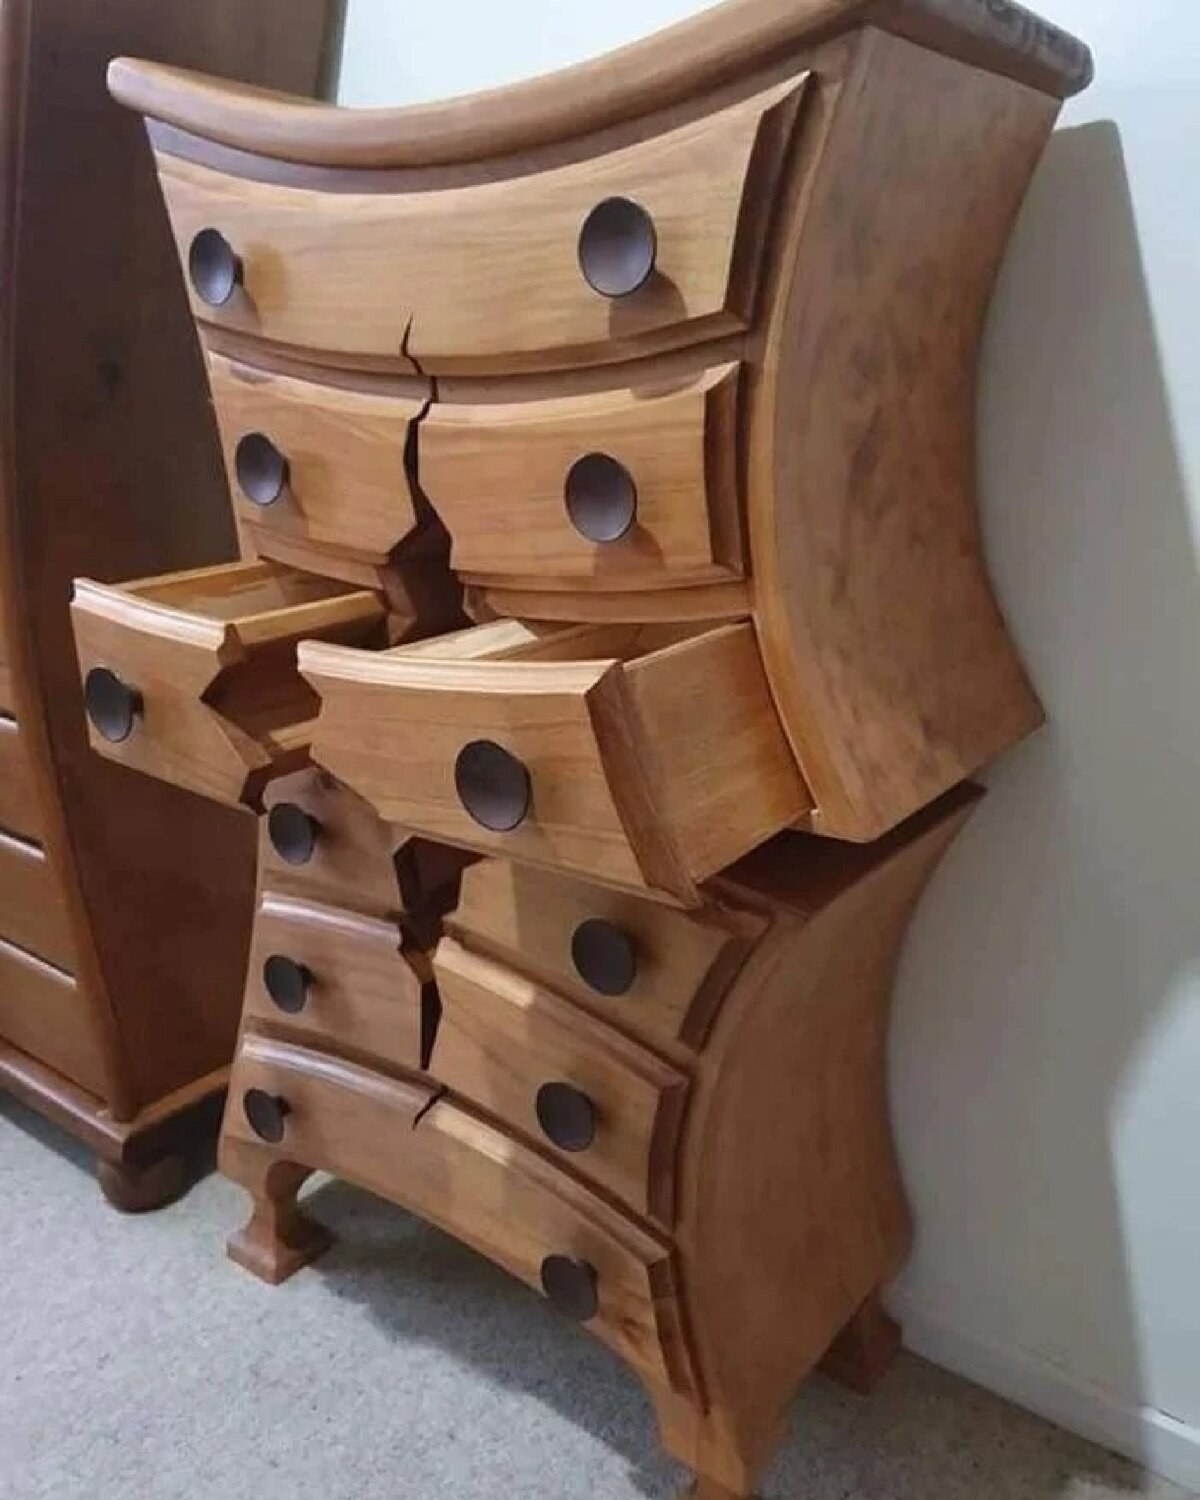 Весел мебель. Мебель Хэнка Верхоффа. Необычная мебель из дерева. Креативный комод. Необычные комоды из дерева.